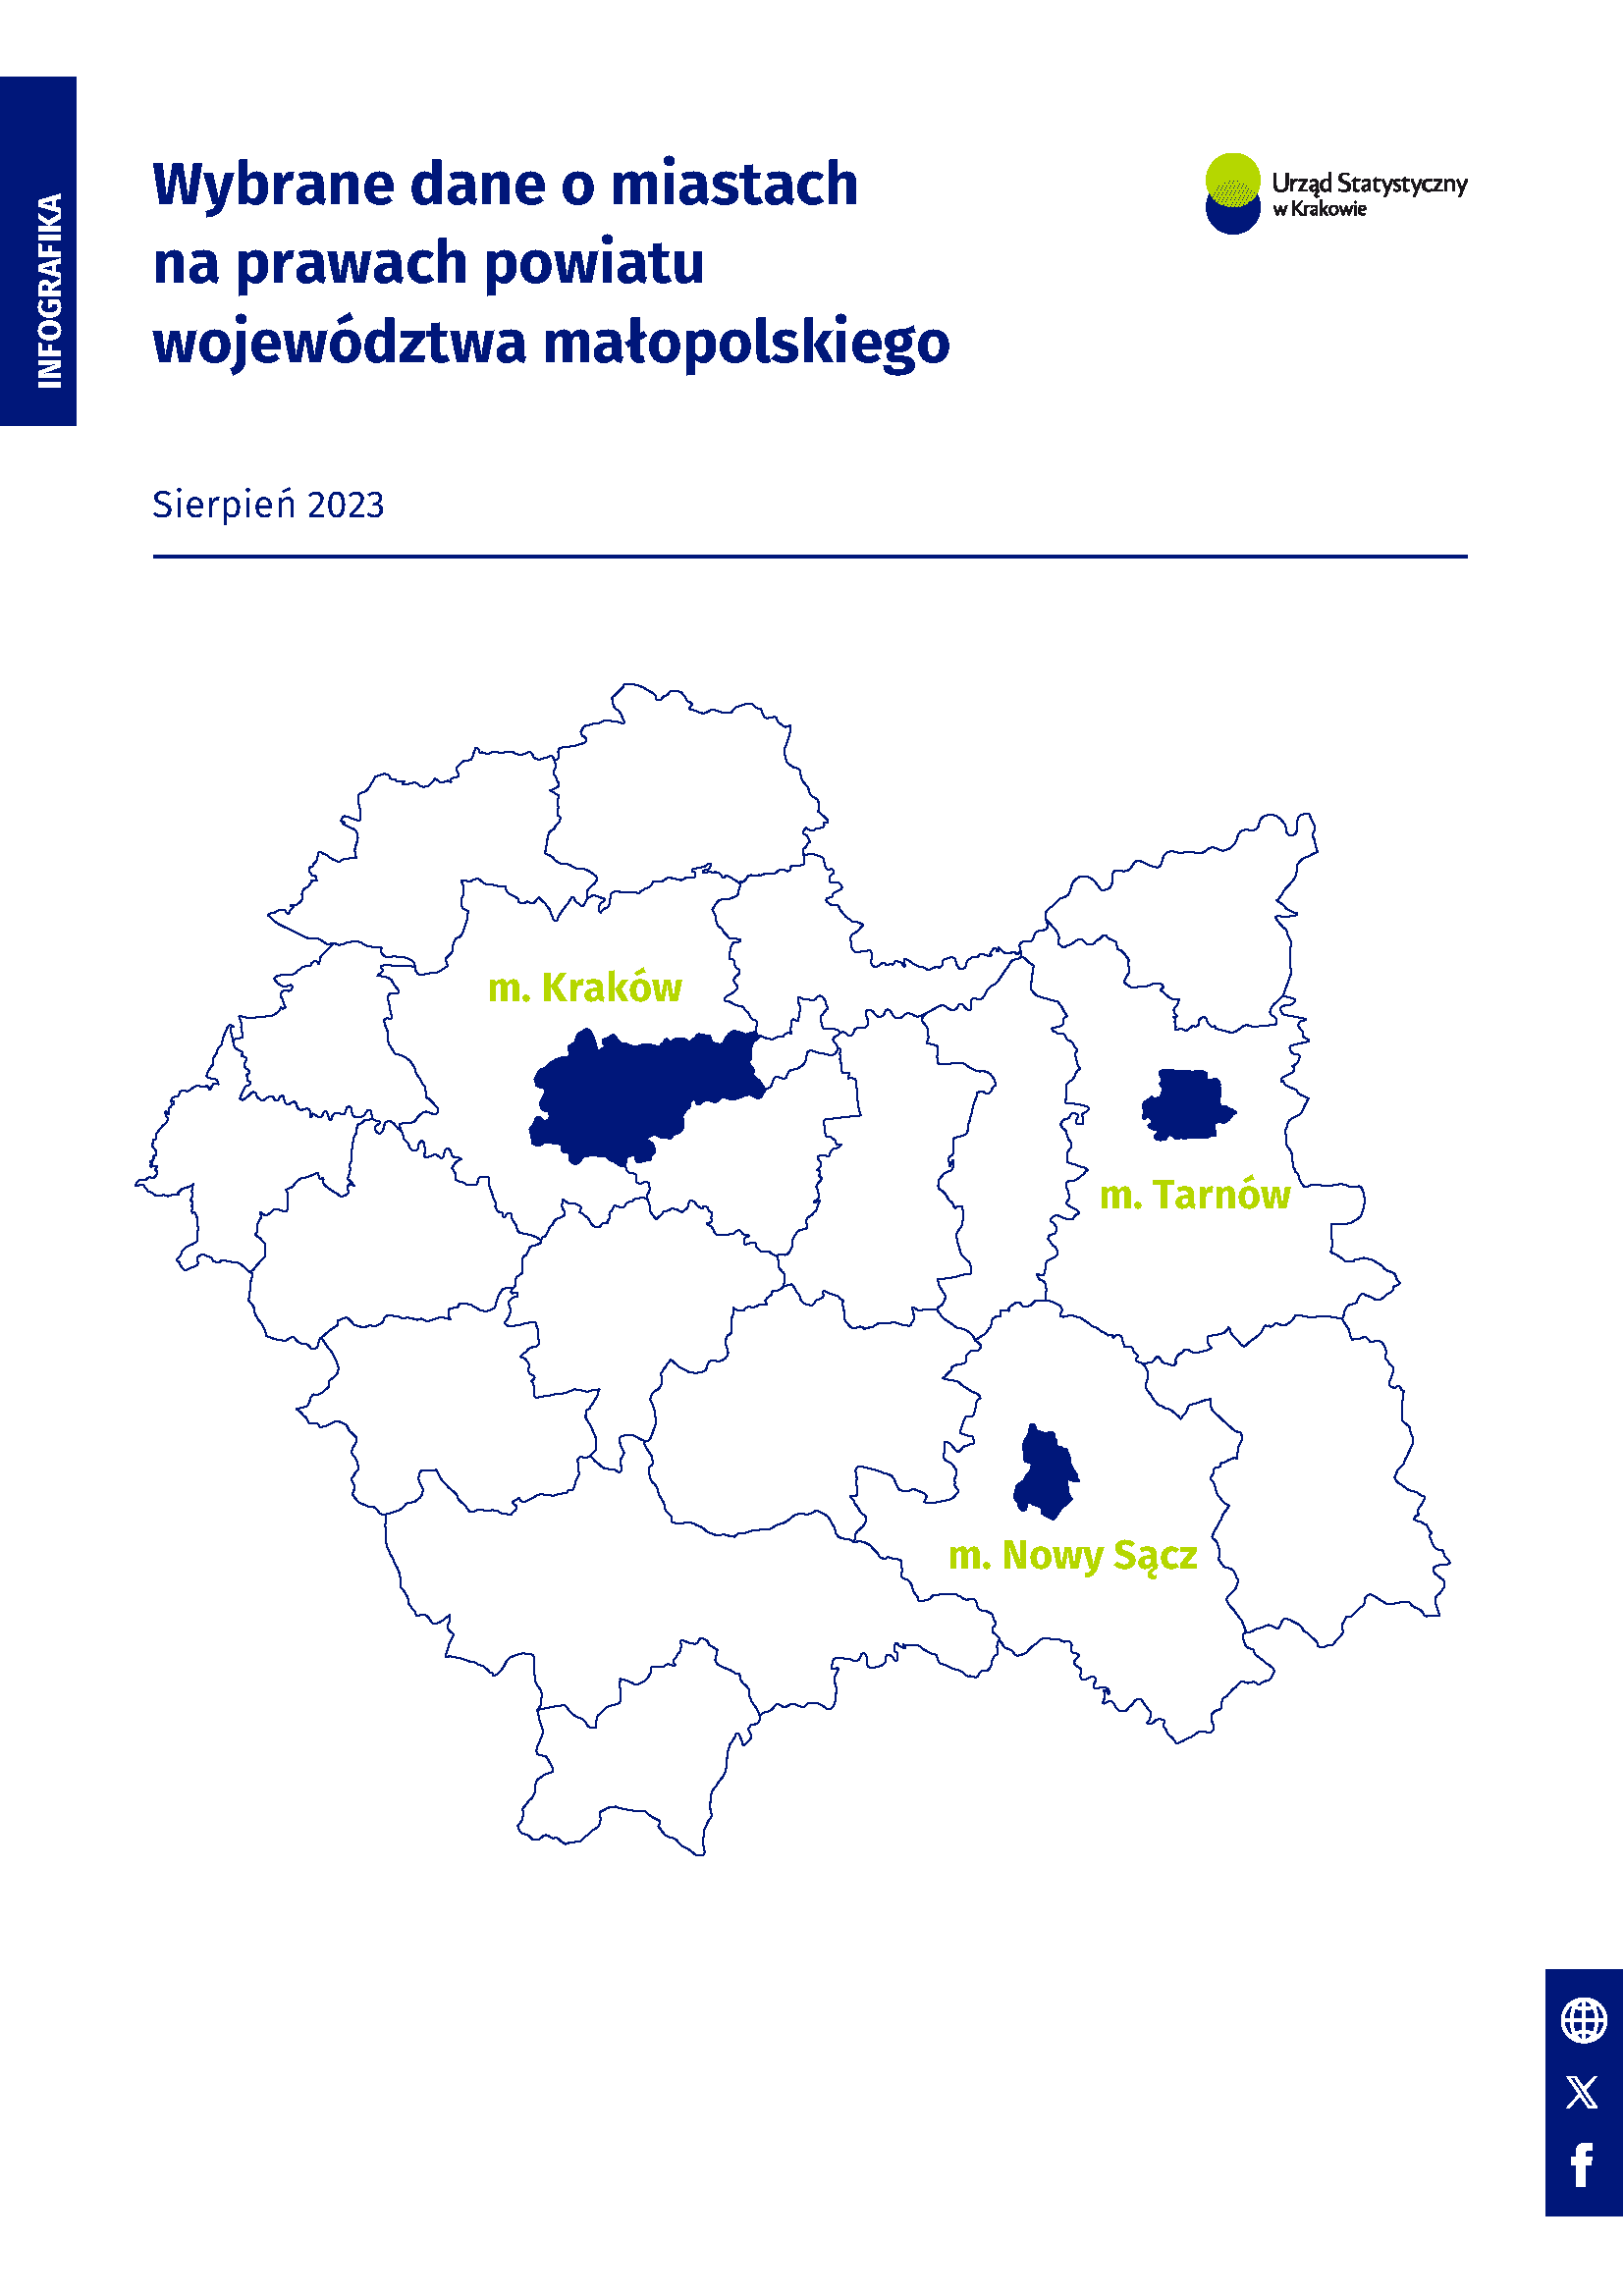 Infografika - Wybrane dane o miastach na prawach powiatu województwa małopolskiego - sierpień 2023